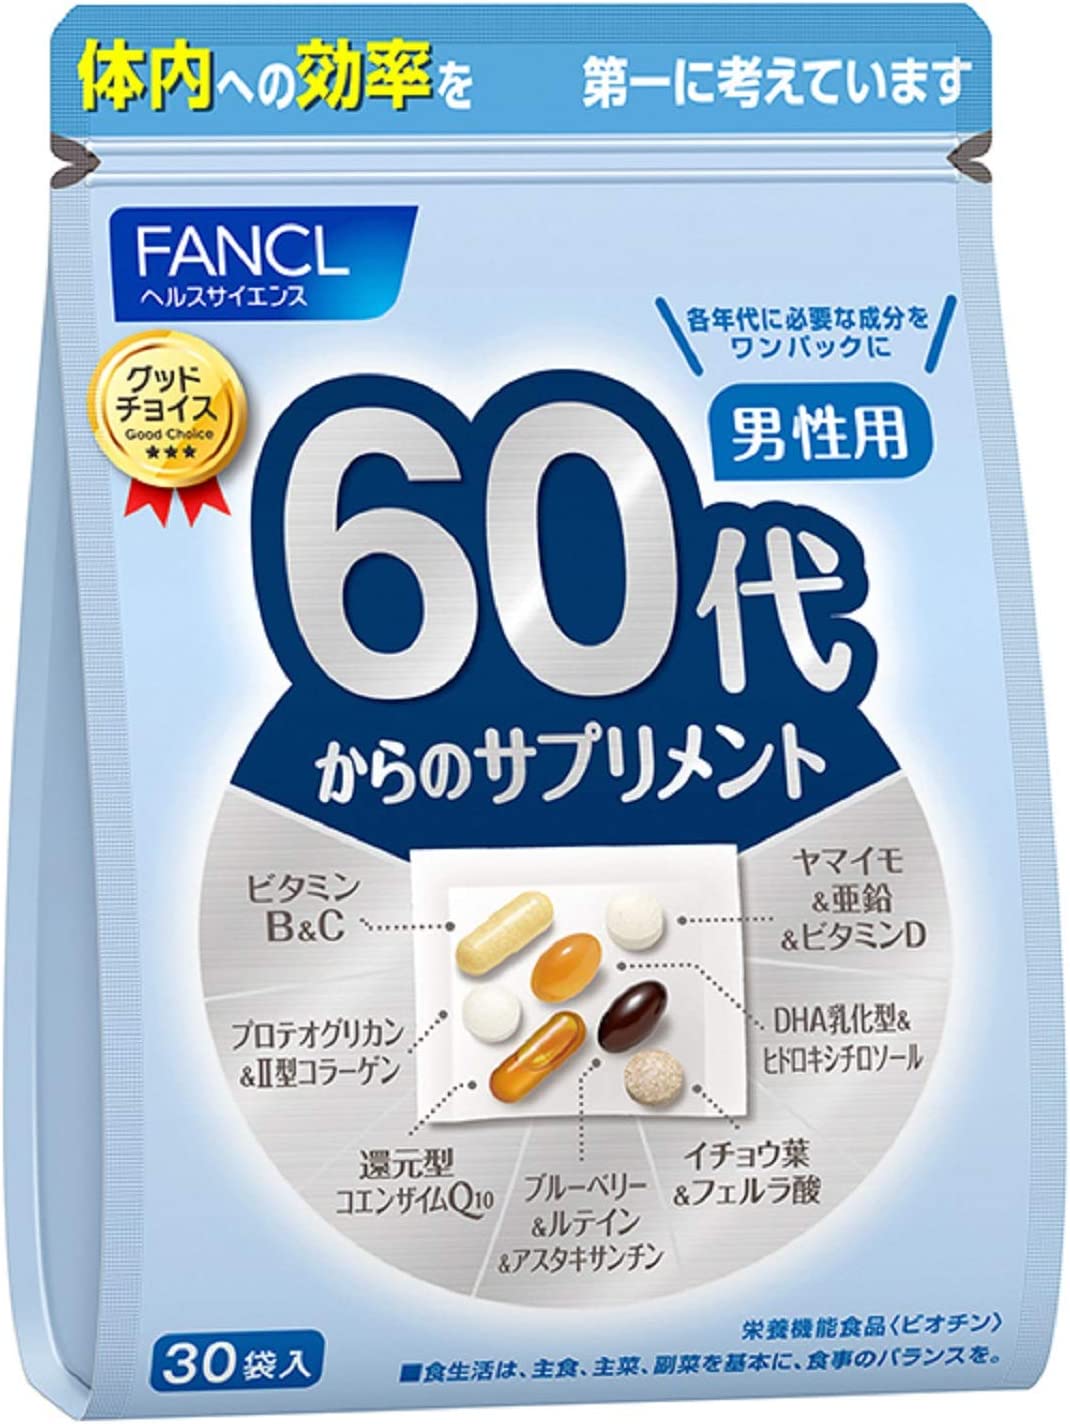 Комплекс витамин FANCL для мужчин старше 60 лет